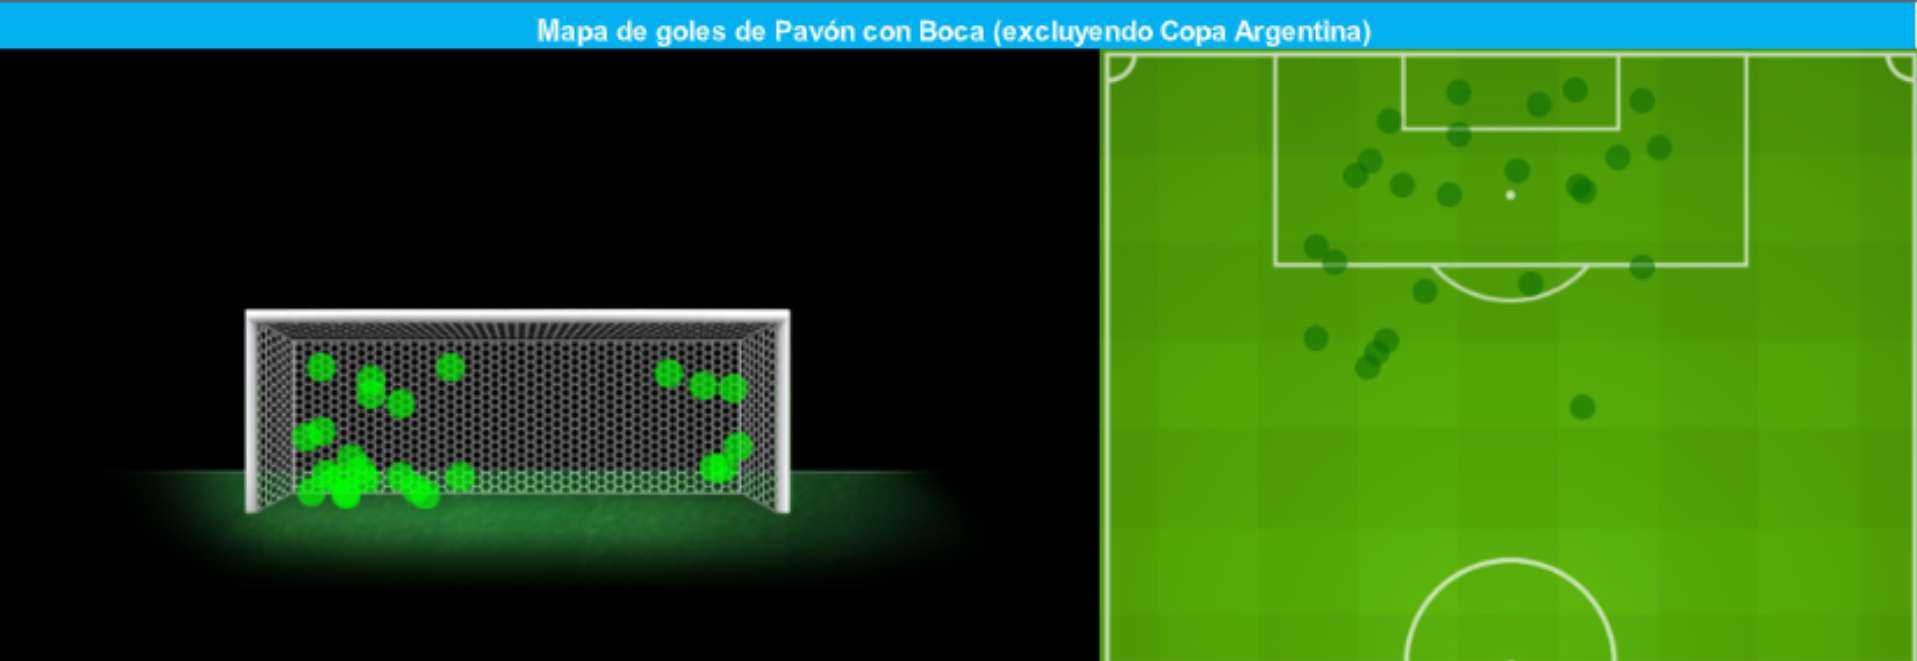 Mapa de goles de Pavon Boca GFX Opta